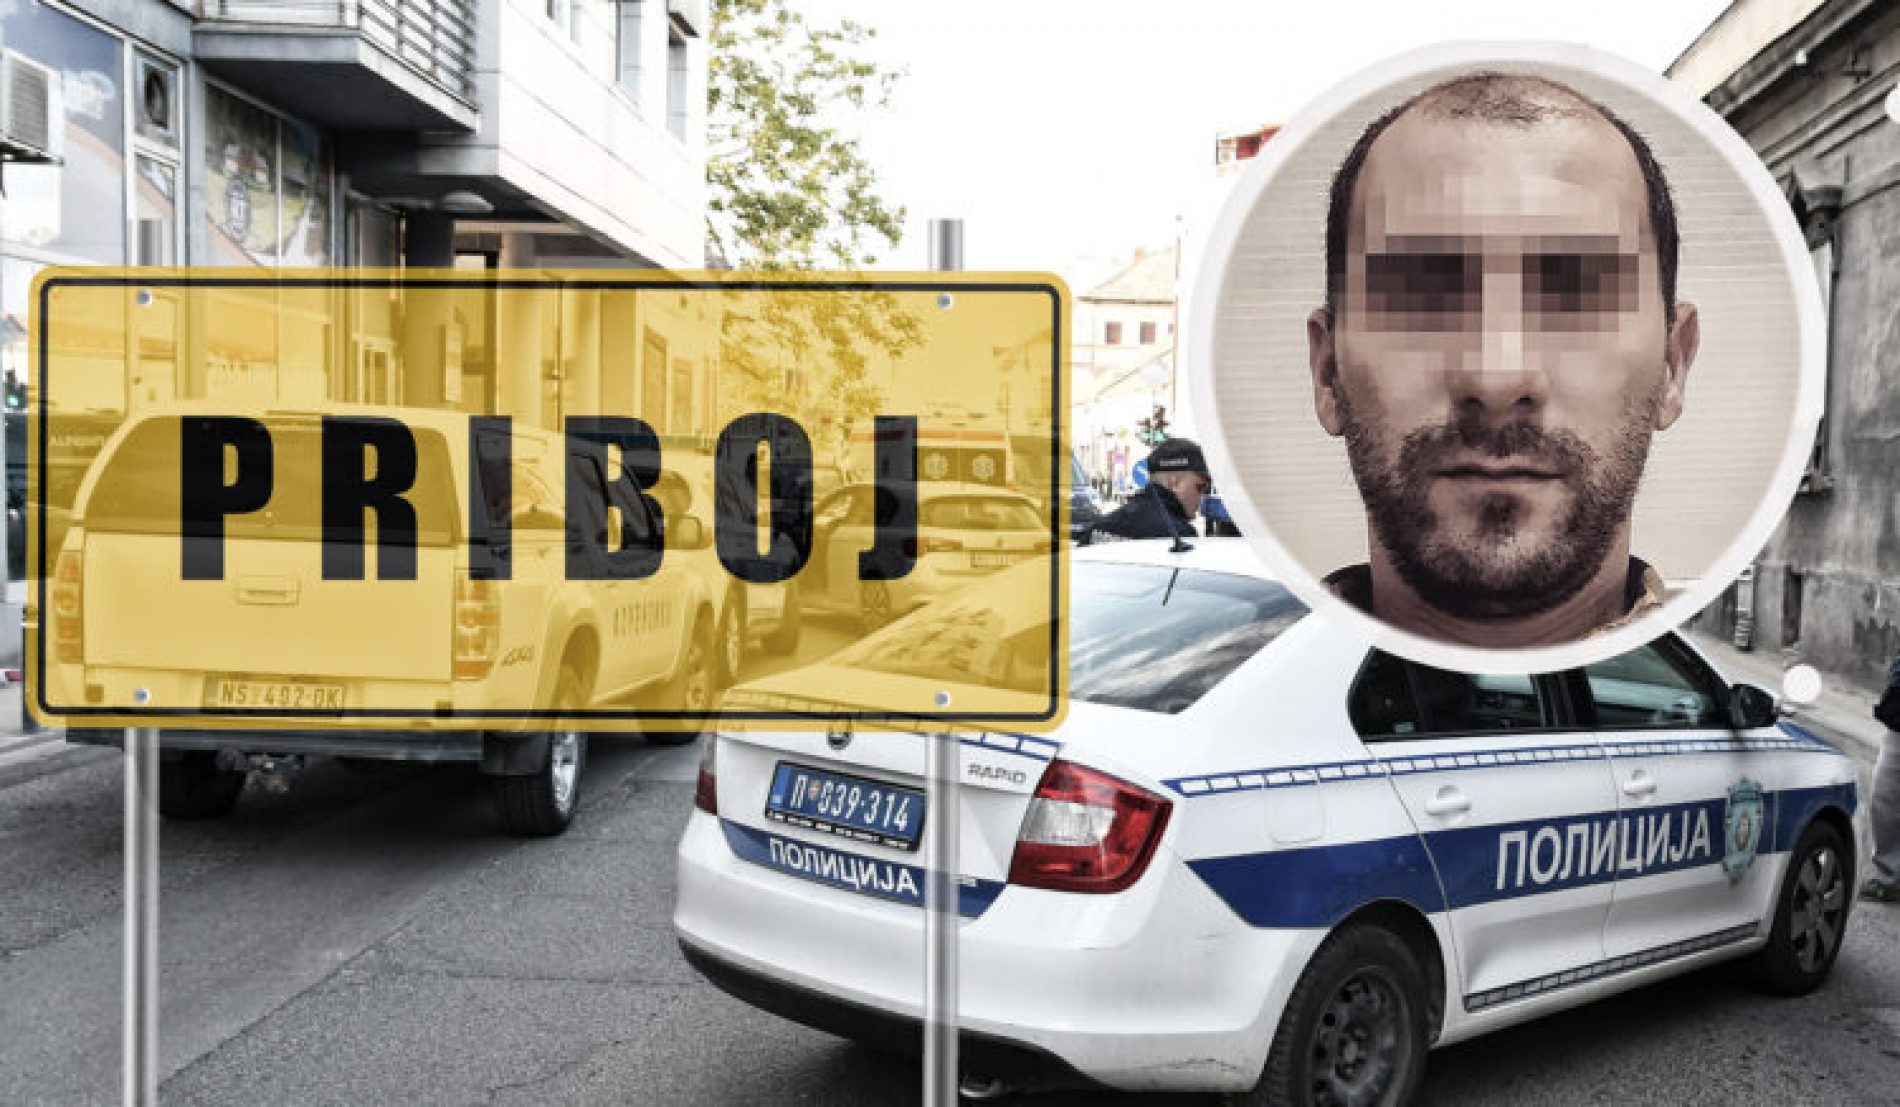 Nastavlja se talas nasilja u komšiluku: Policajac iz Beograda bokserom nasmrt pretukao Ervina u Priboju